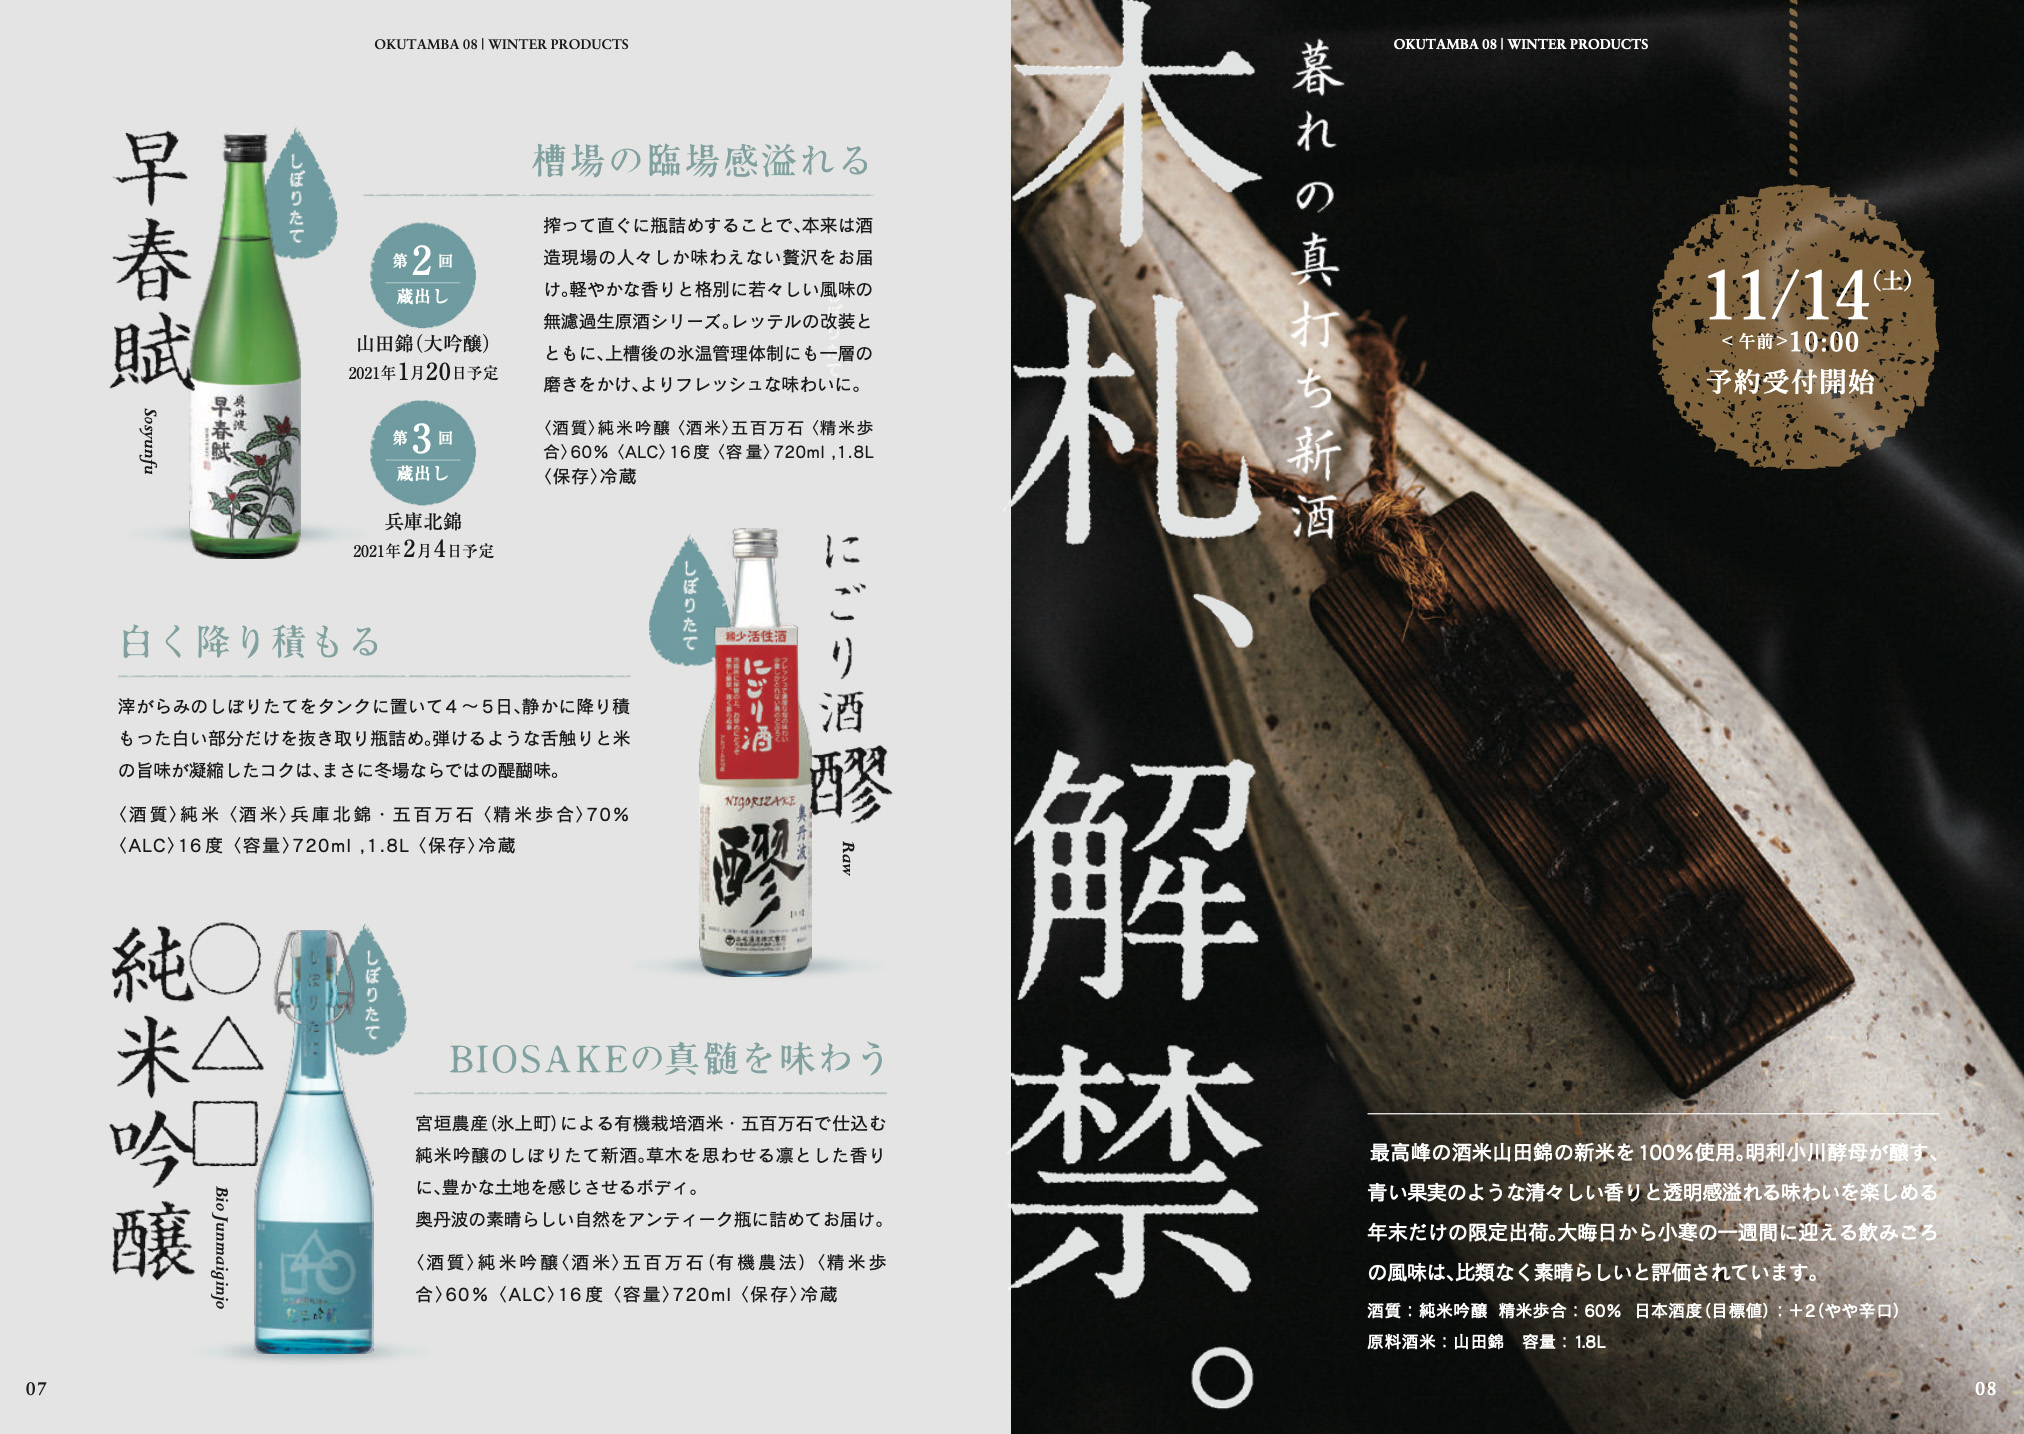 日本清酒产品画册排版设计